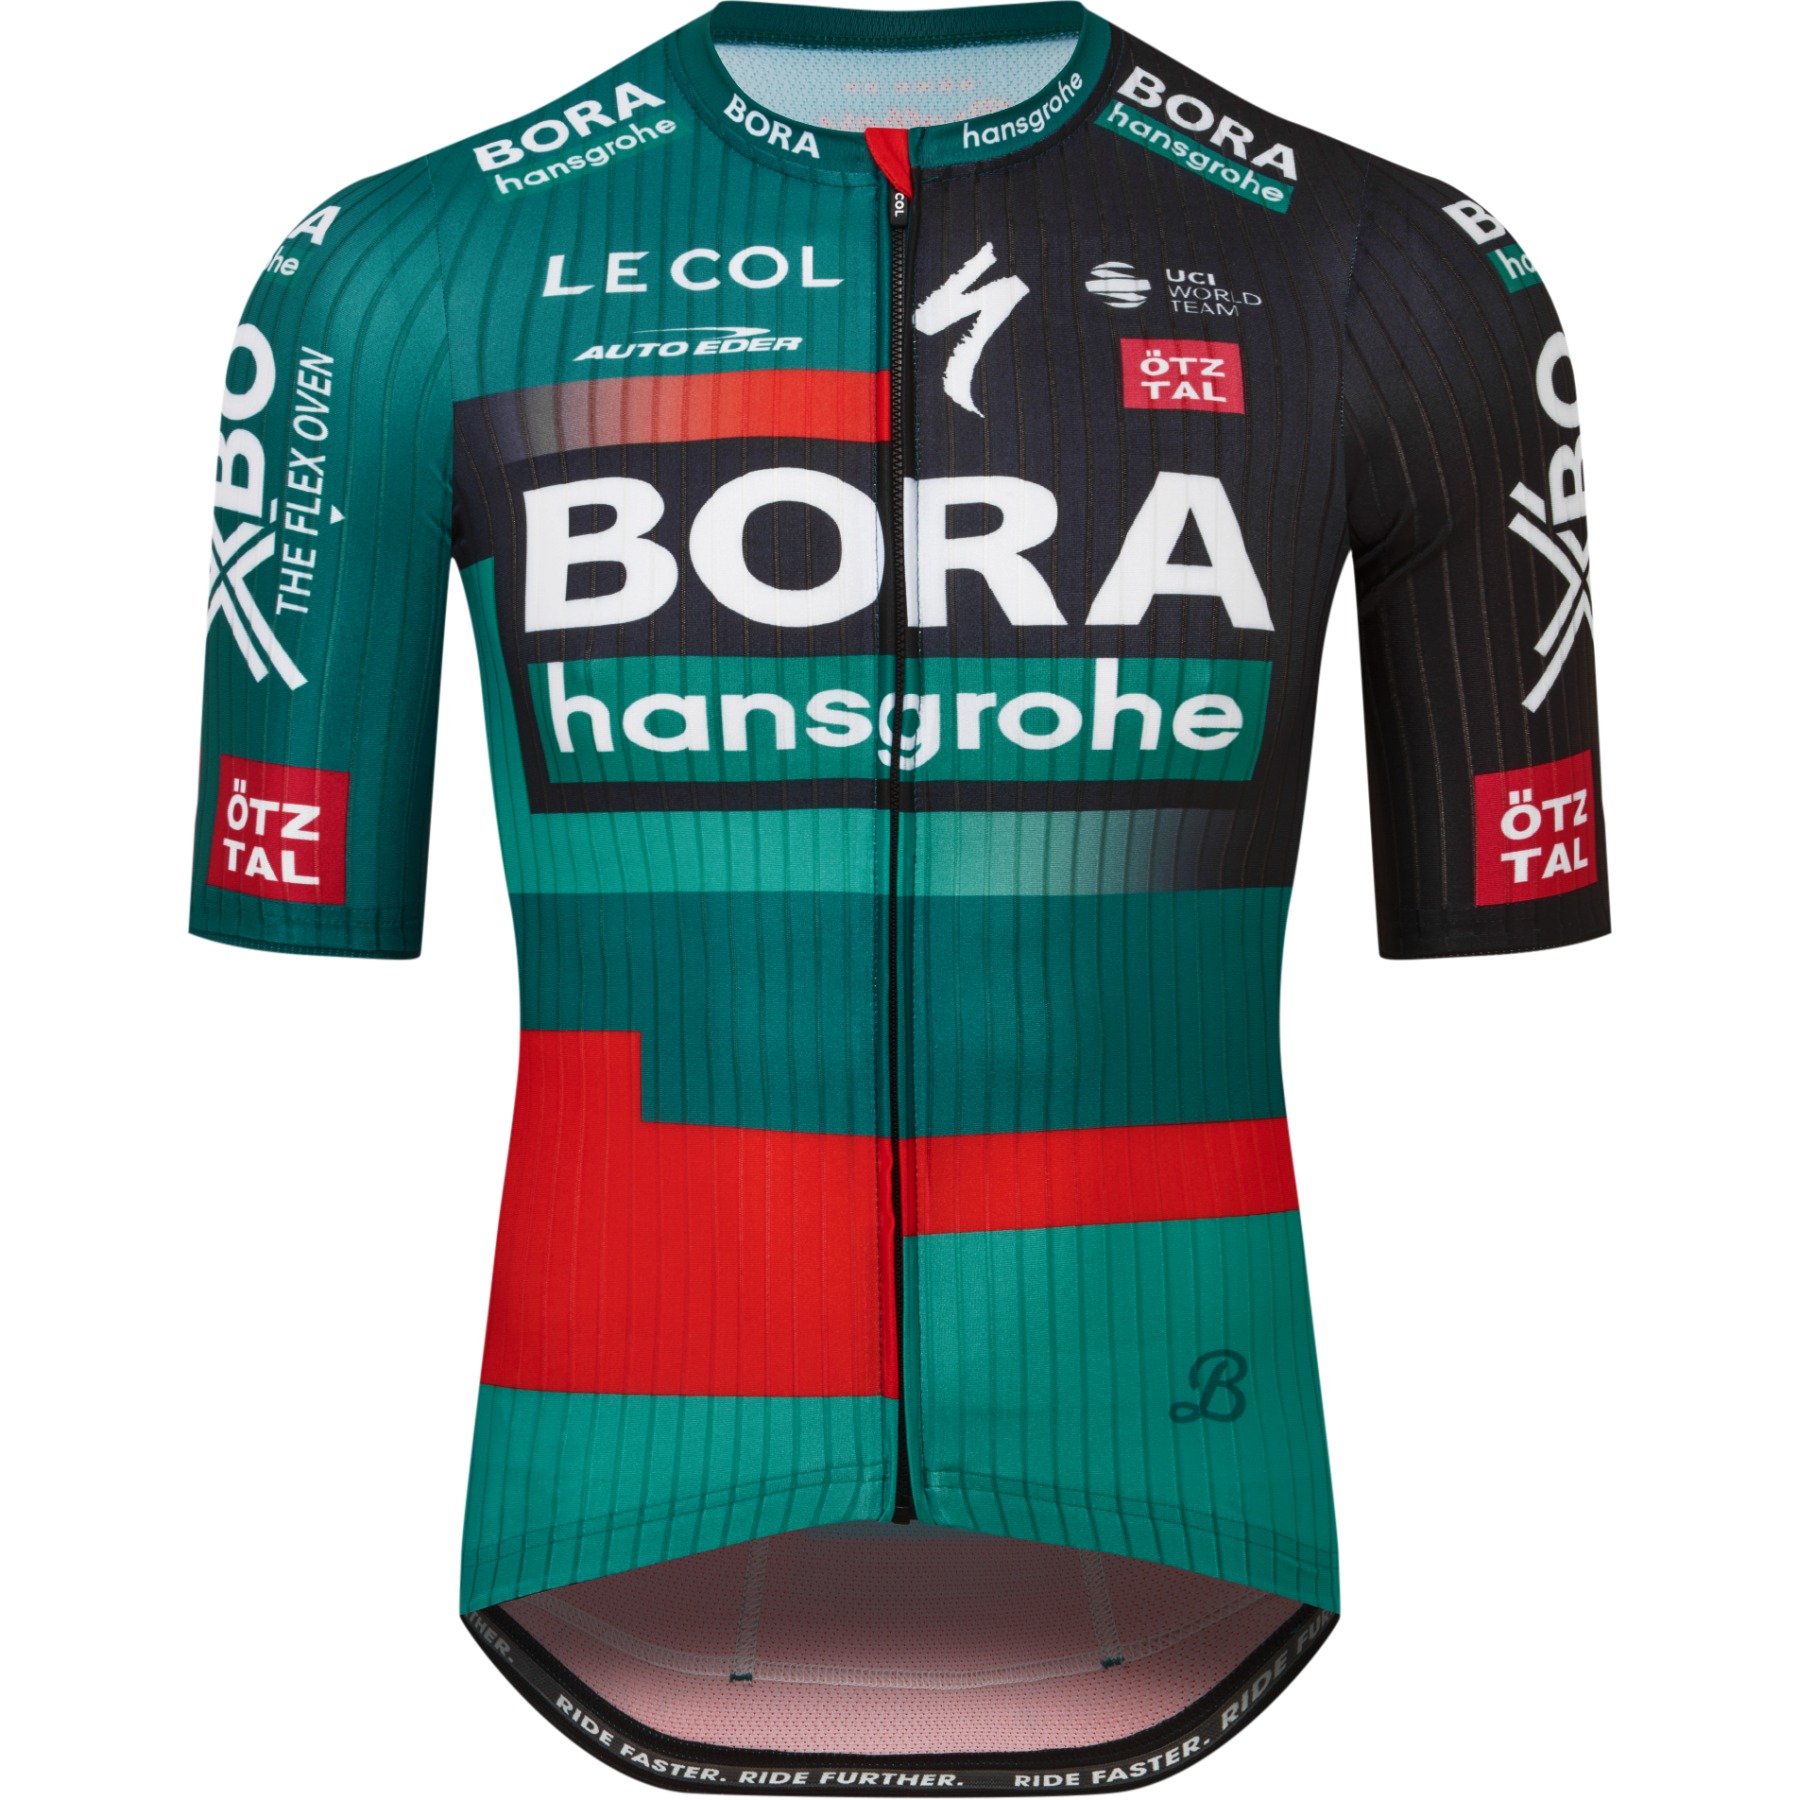 Productfoto van Le Col BORA-hansgrohe Racefietsshirt - Zwart/Groen